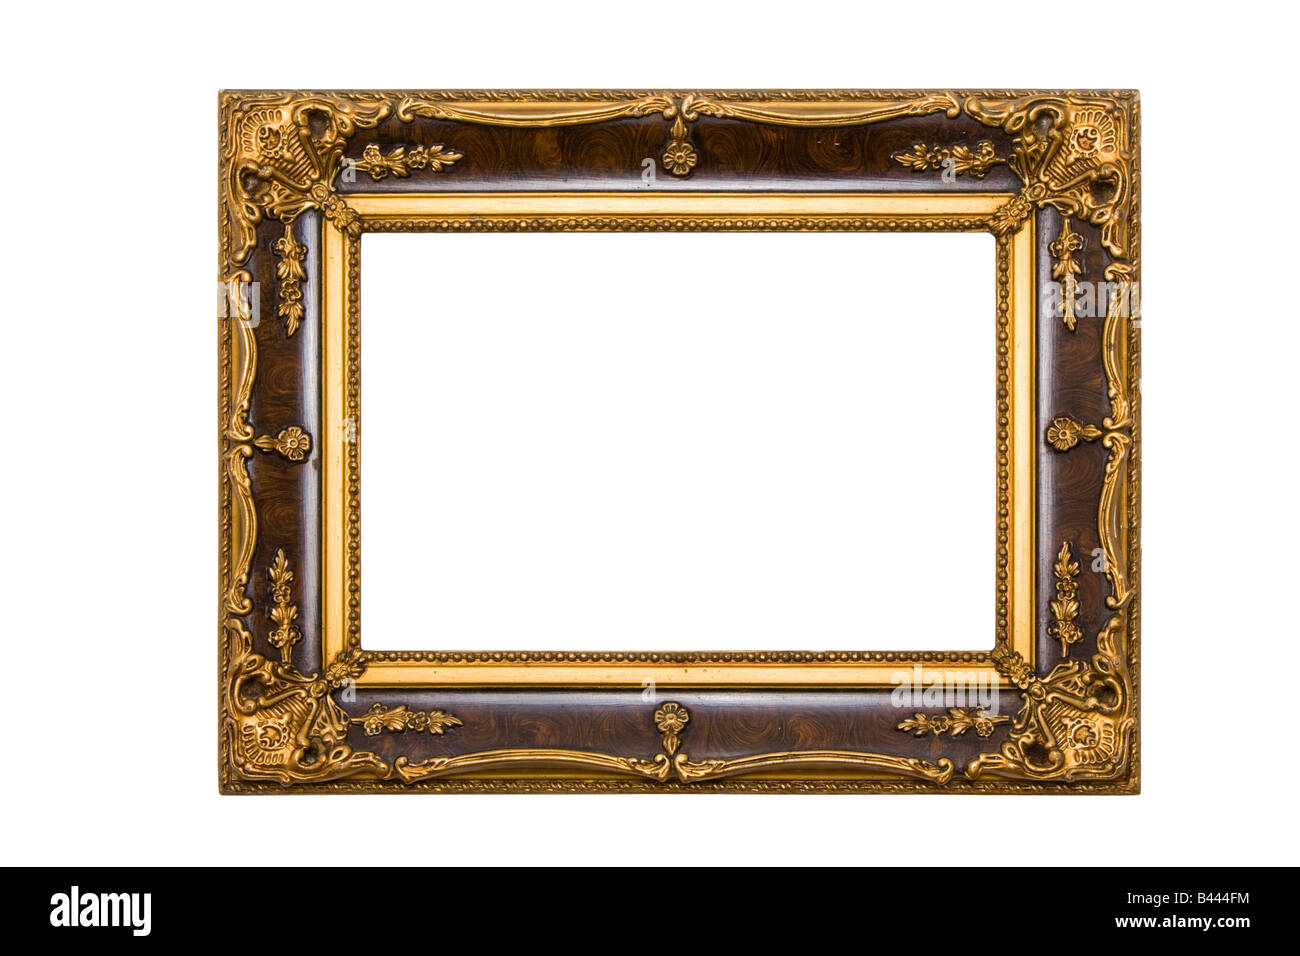 Alt und Alter Gemälde Rahmen isoliert auf weißem Hintergrund  Stockfotografie - Alamy